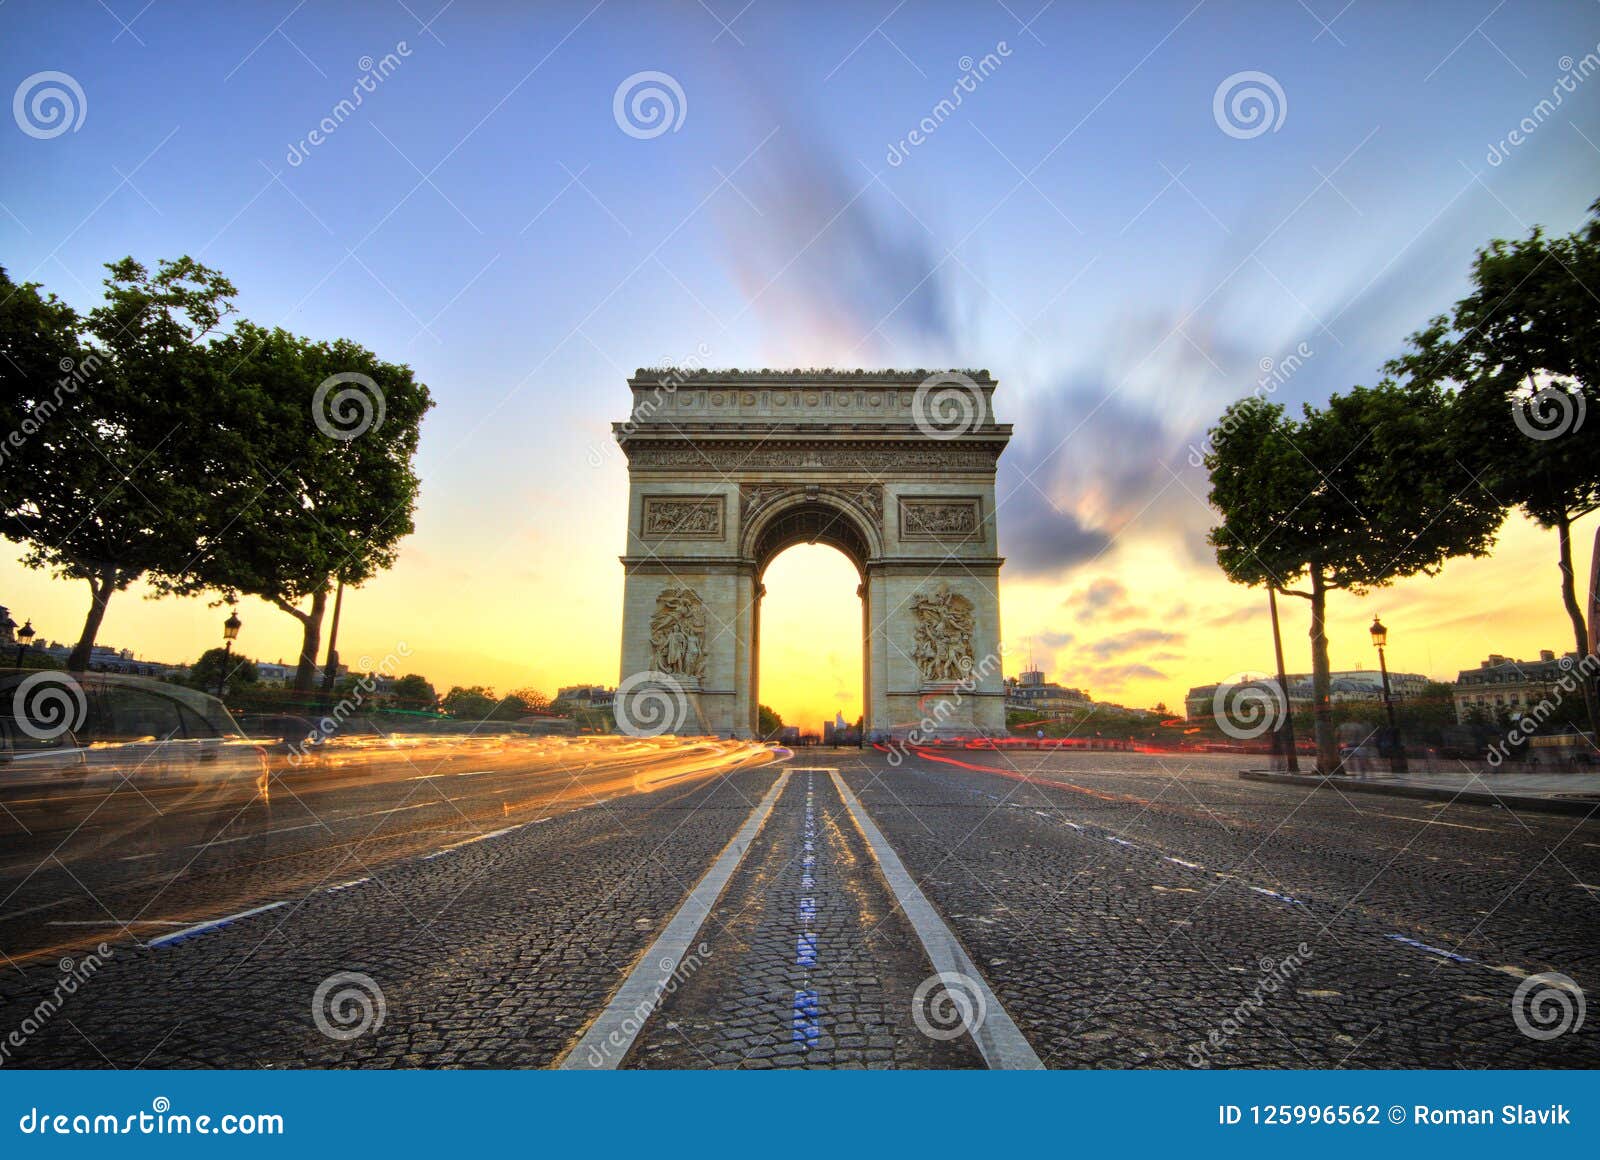 arc de triomphe at sunset, paris